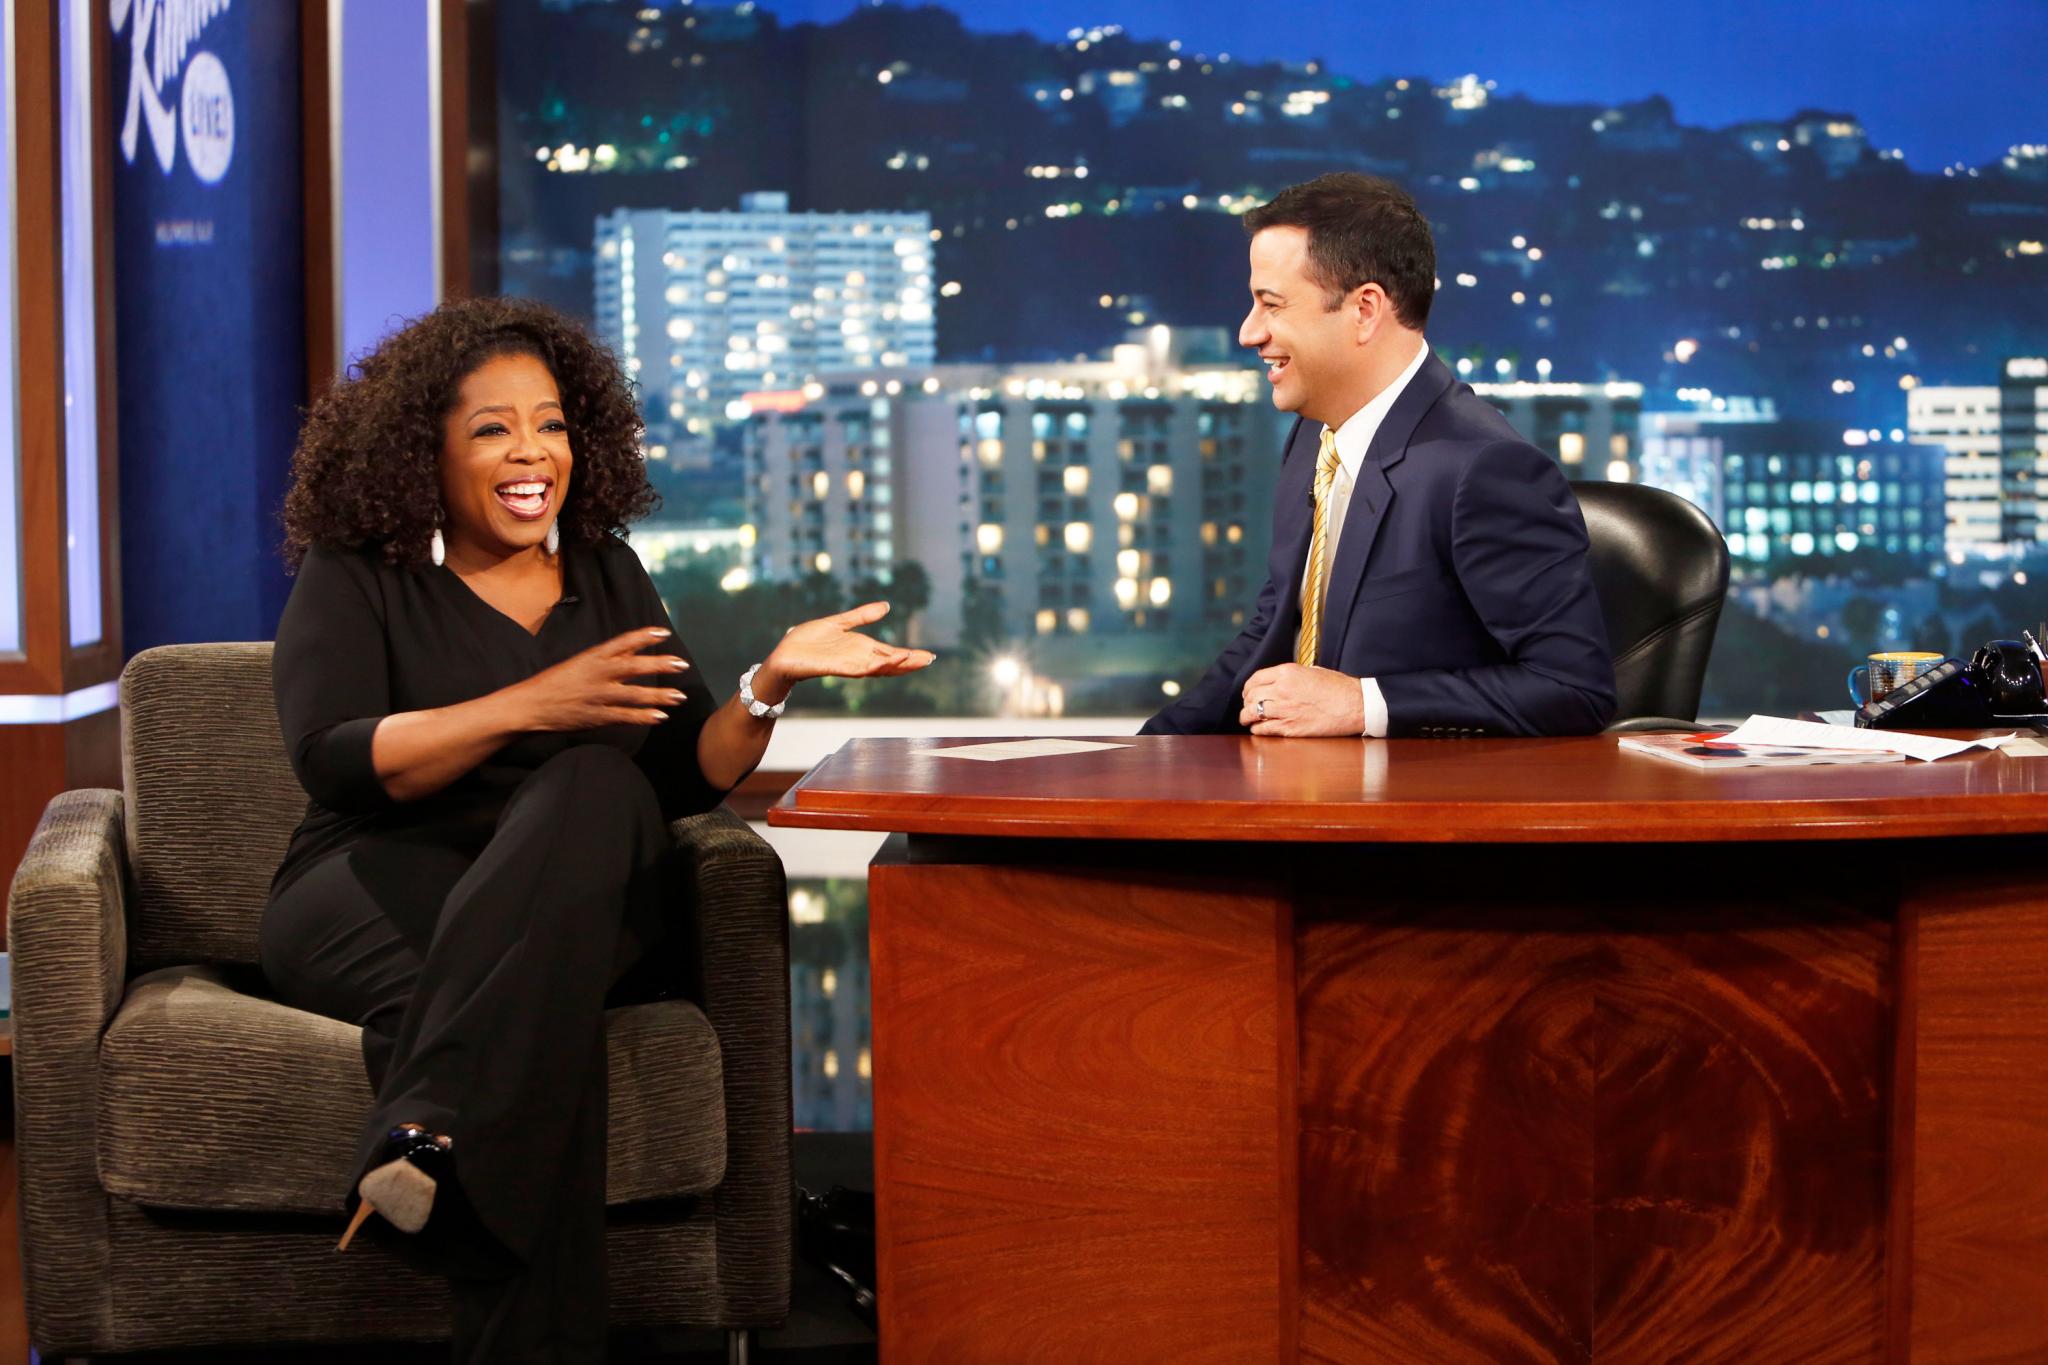 21 Reasons Why We Love Oprah
